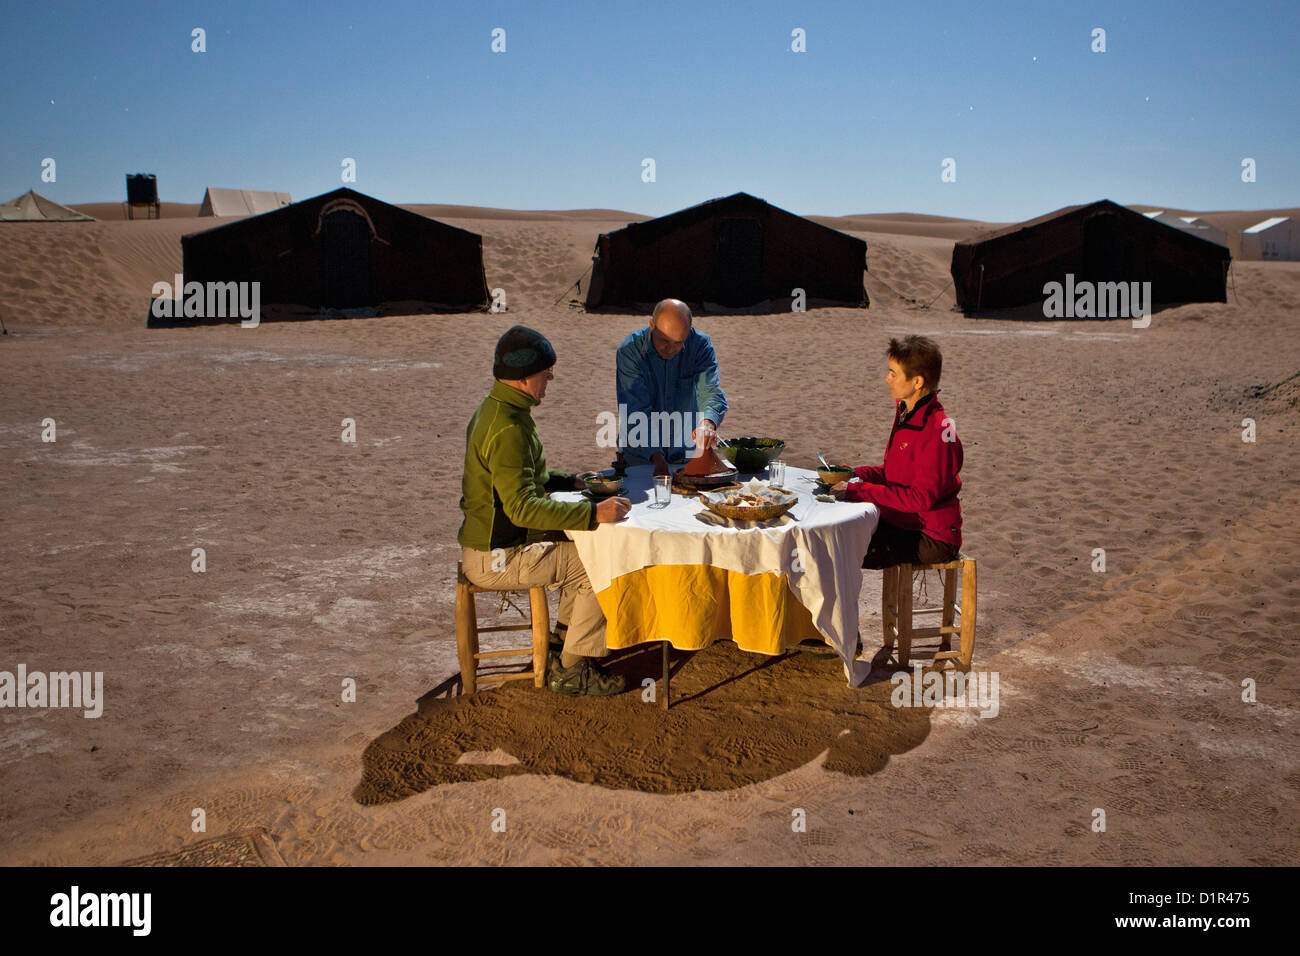 Le Maroc, M'Hamid, Erg Chigaga dunes de sable. Désert du Sahara. Camp de vacances, un bivouac. Les touristes en train de dîner à la pleine lune la lumière. Banque D'Images